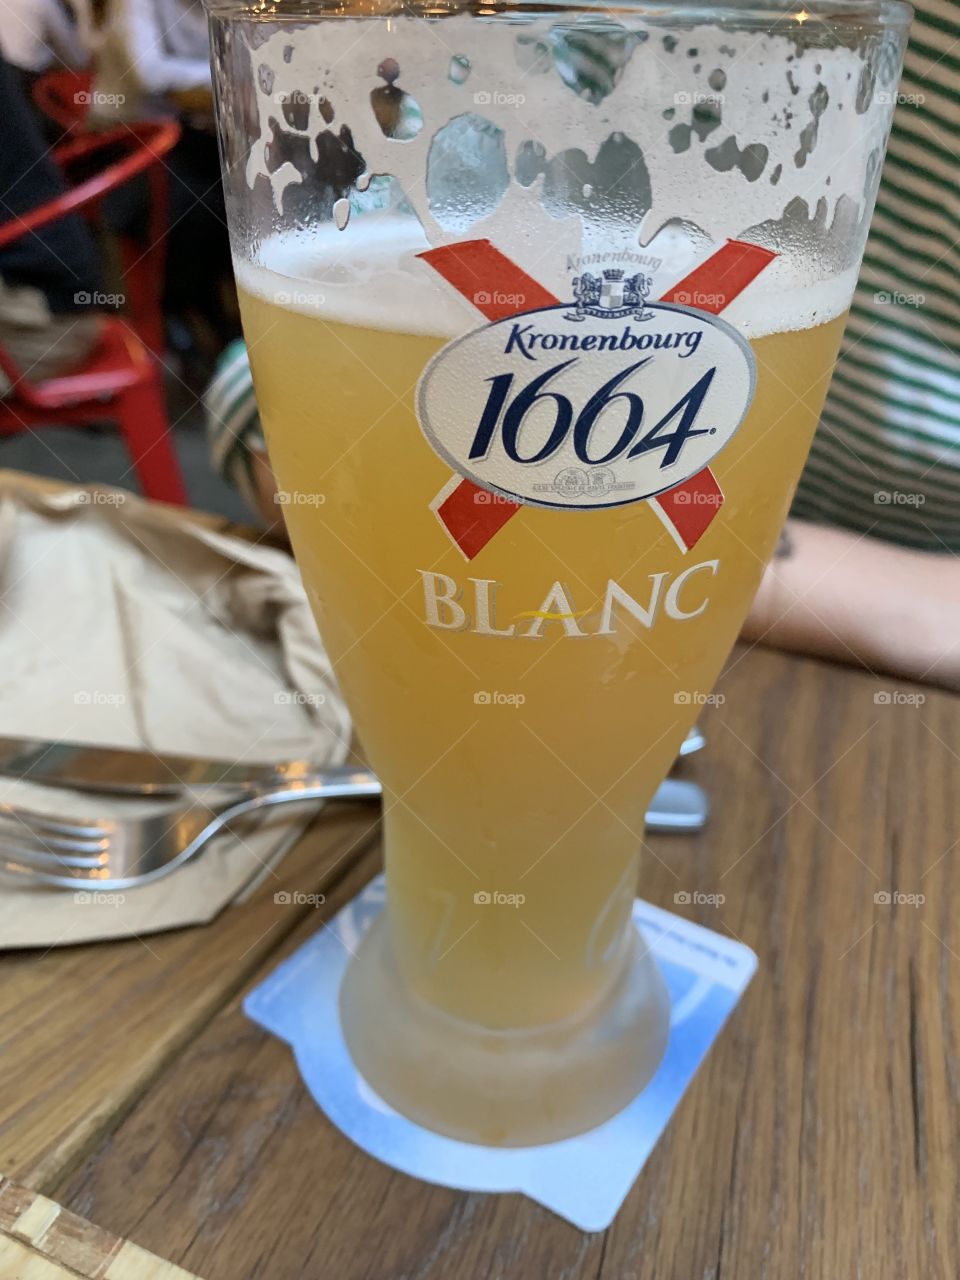 Blanc beer